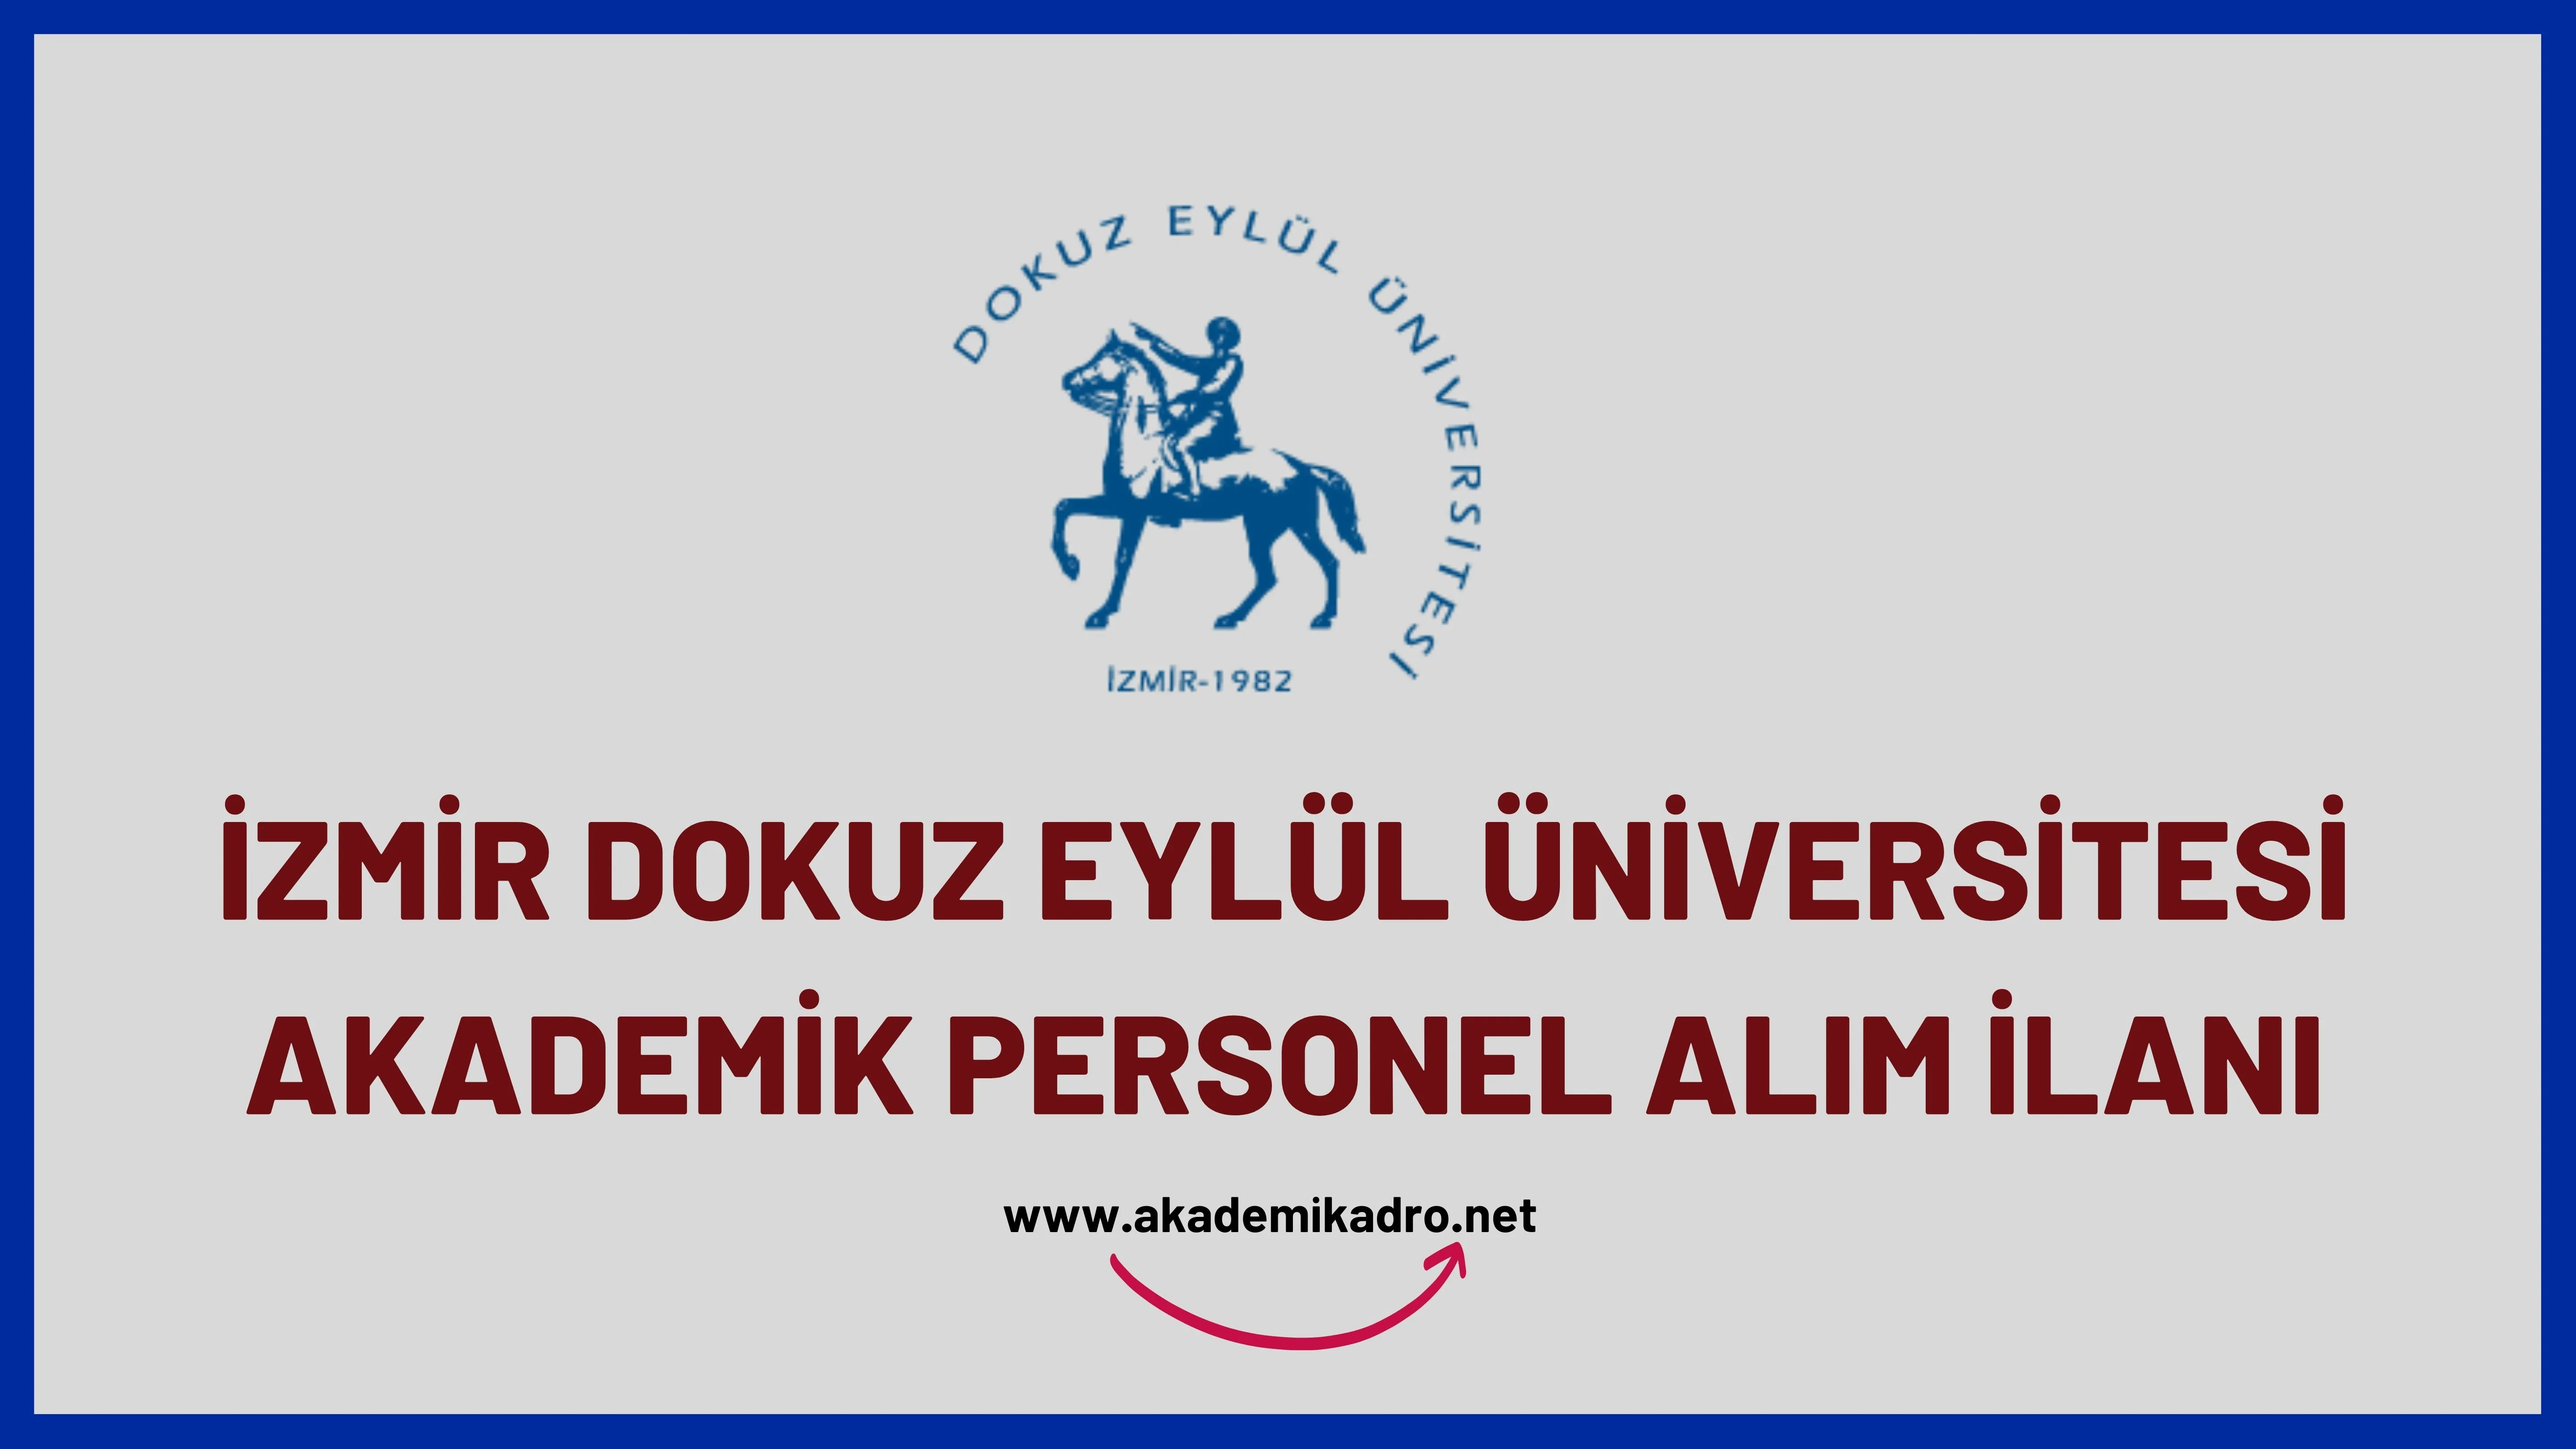 Dokuz Eylül Üniversitesi birçok alandan 18 akademik personel alacak.